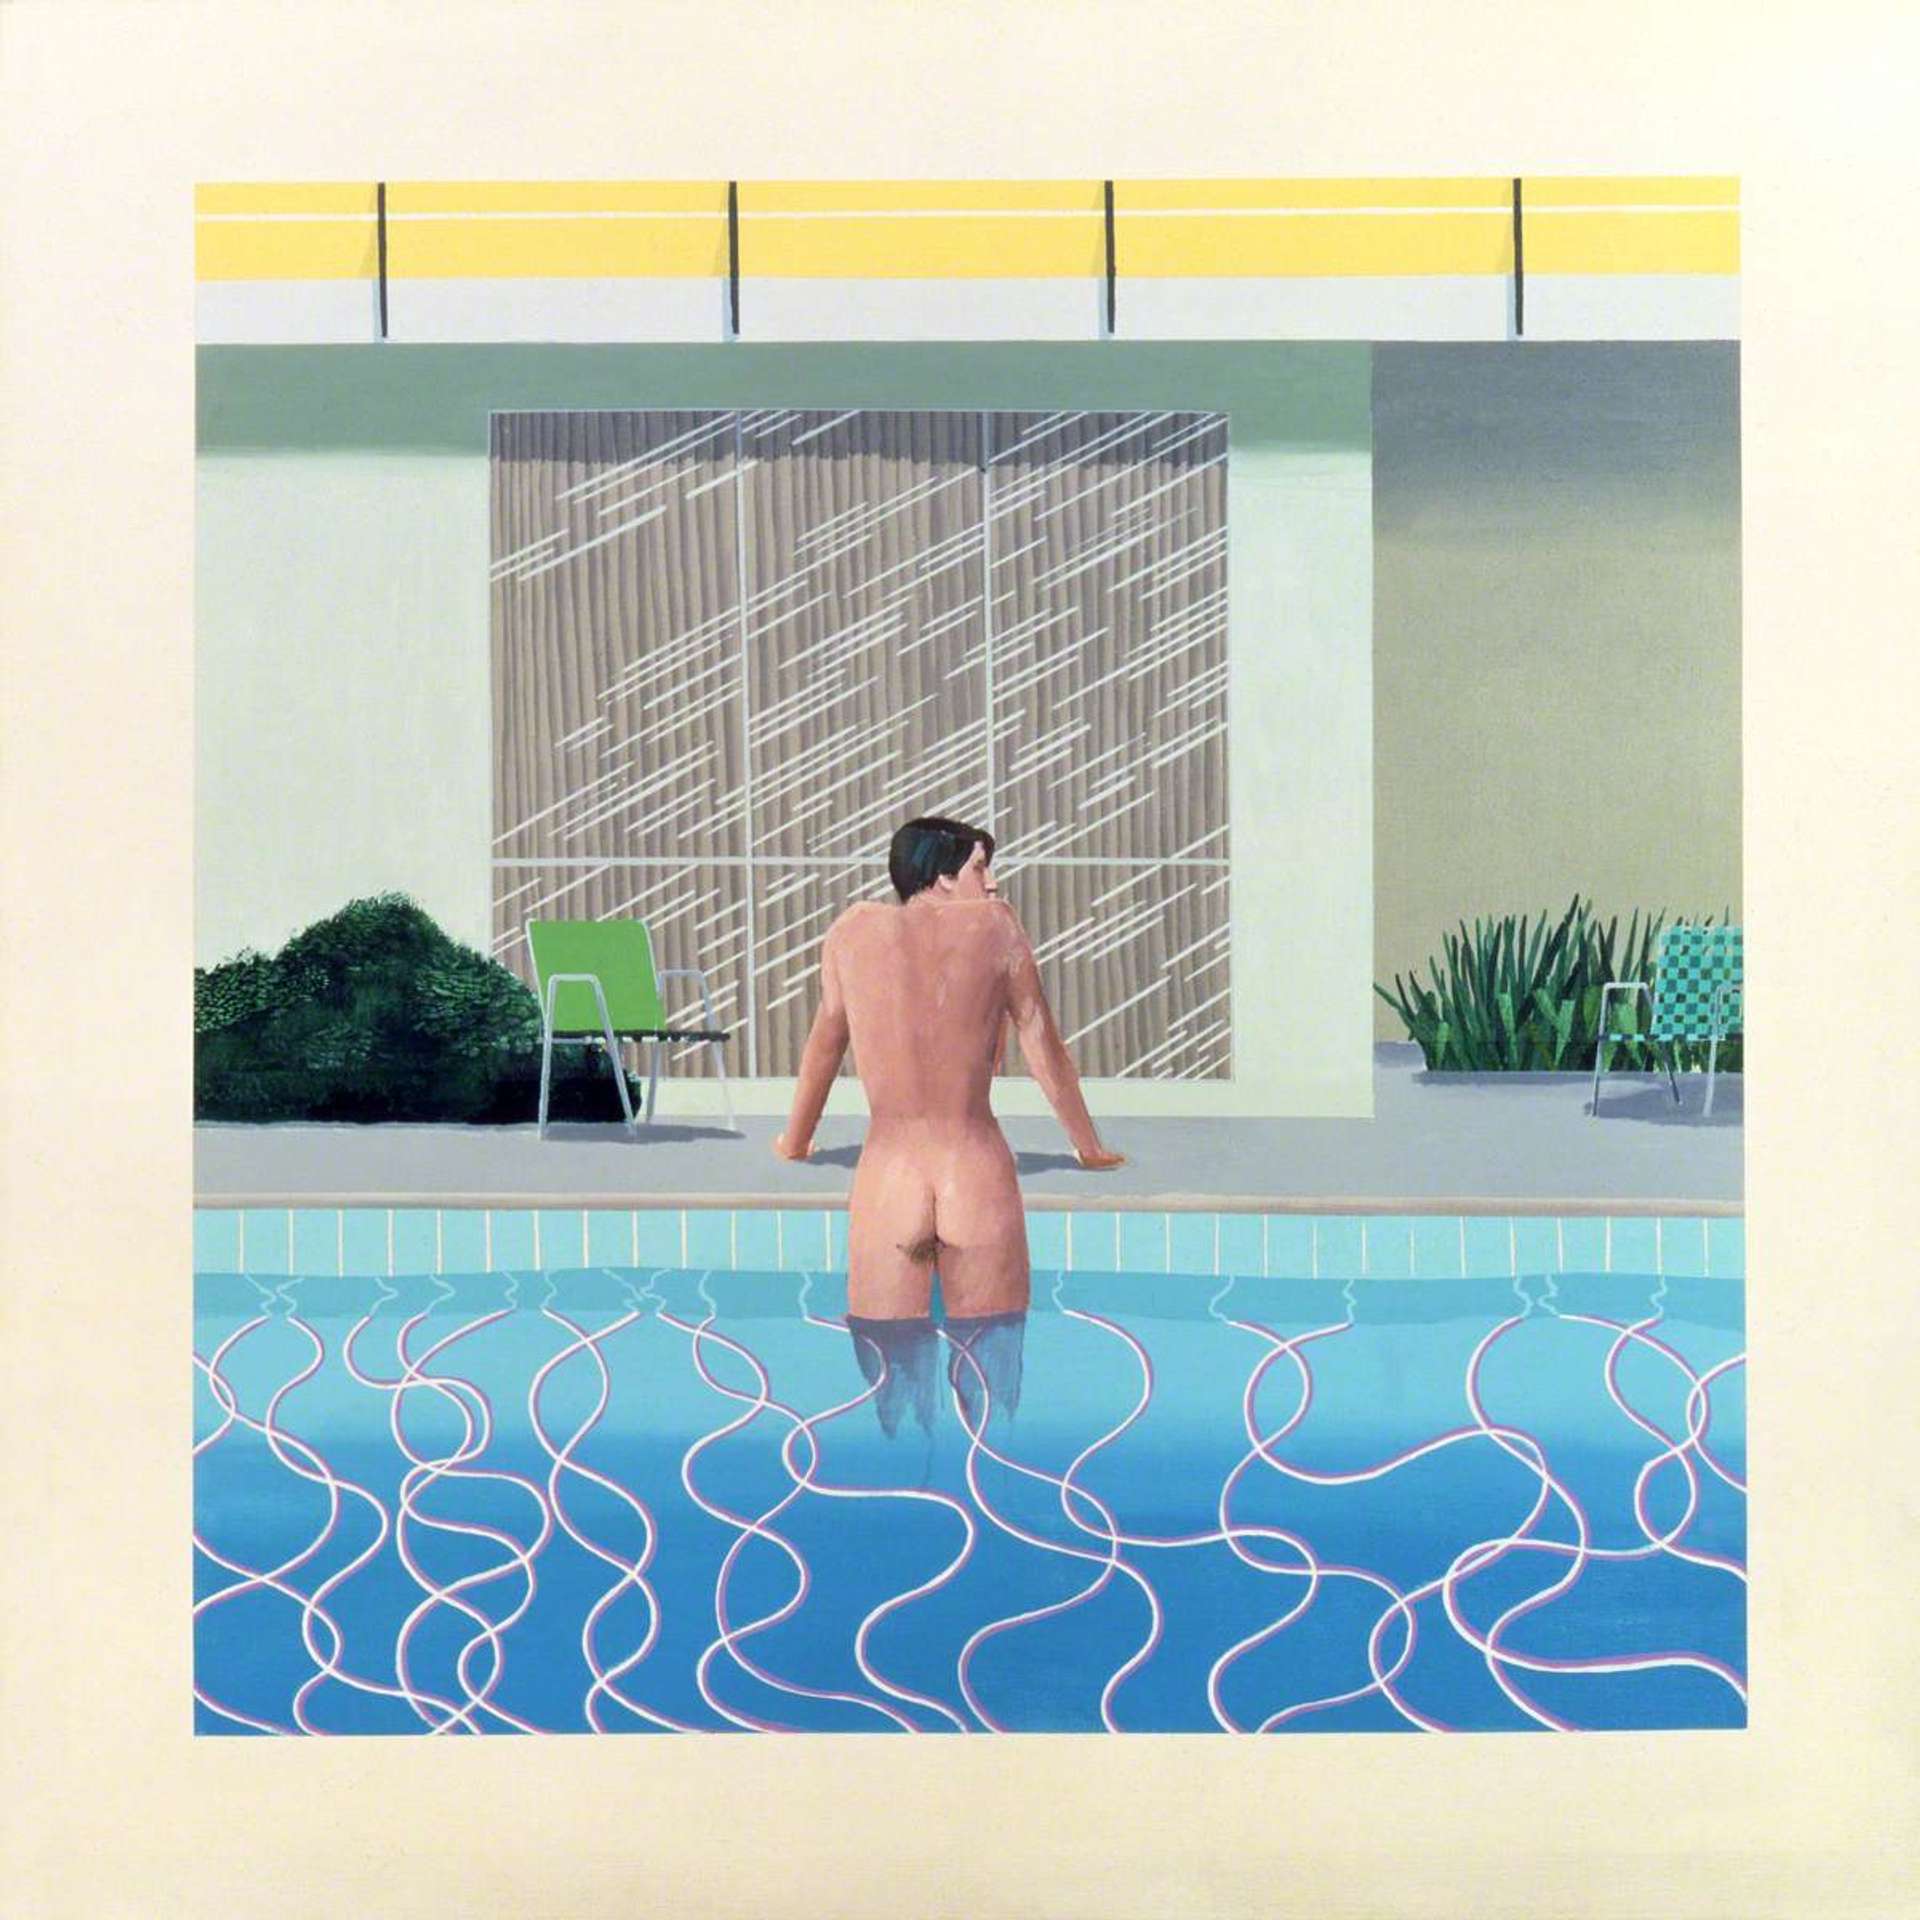 Image © Art UK / Peter Getting Out Of Nick's Pool by David Hockney - MyArtBroker